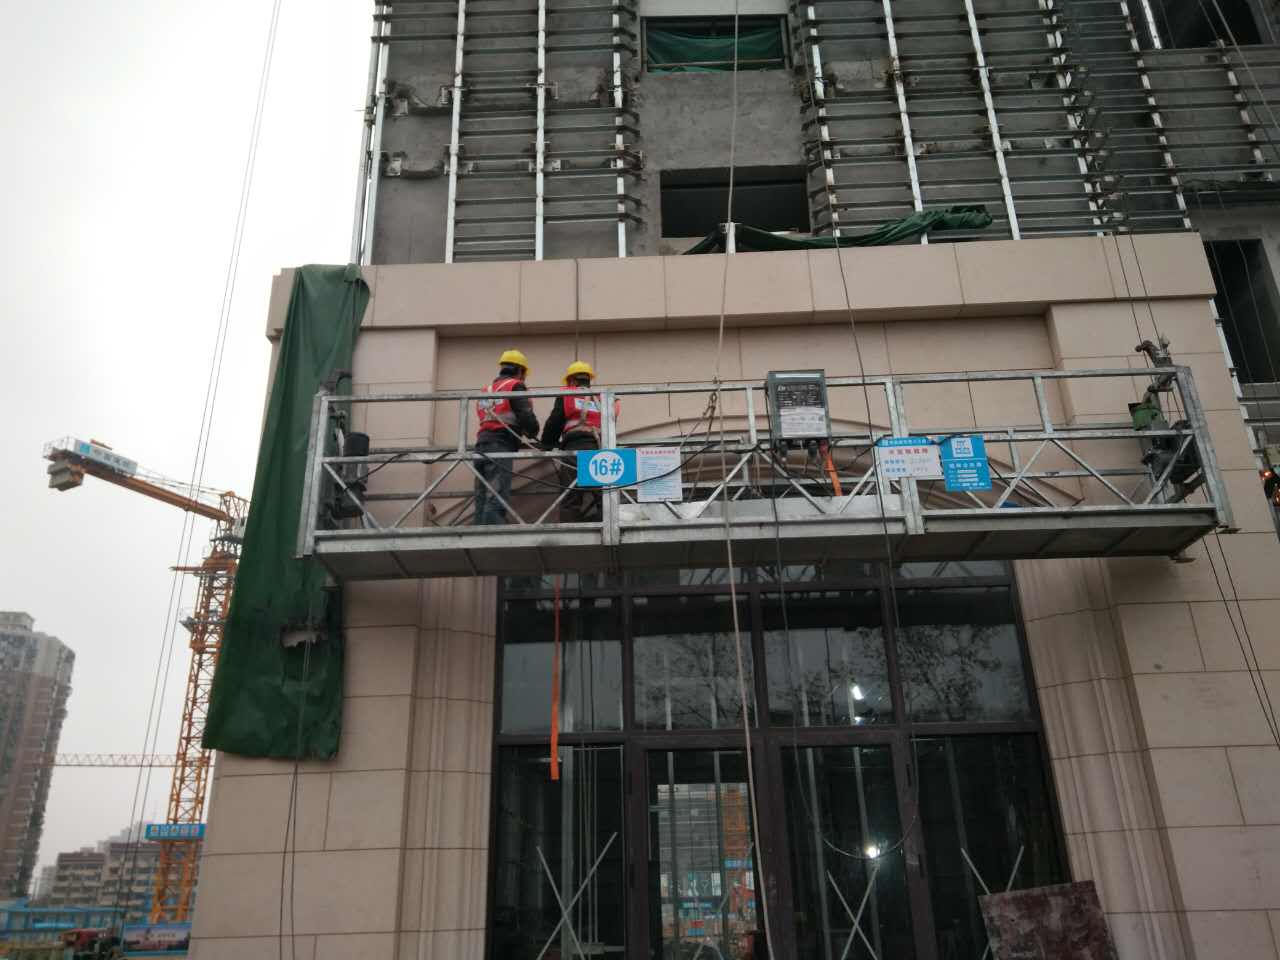 上海火车站北广场楼外幕墙工程 业明华幕墙施工队在紧张施工